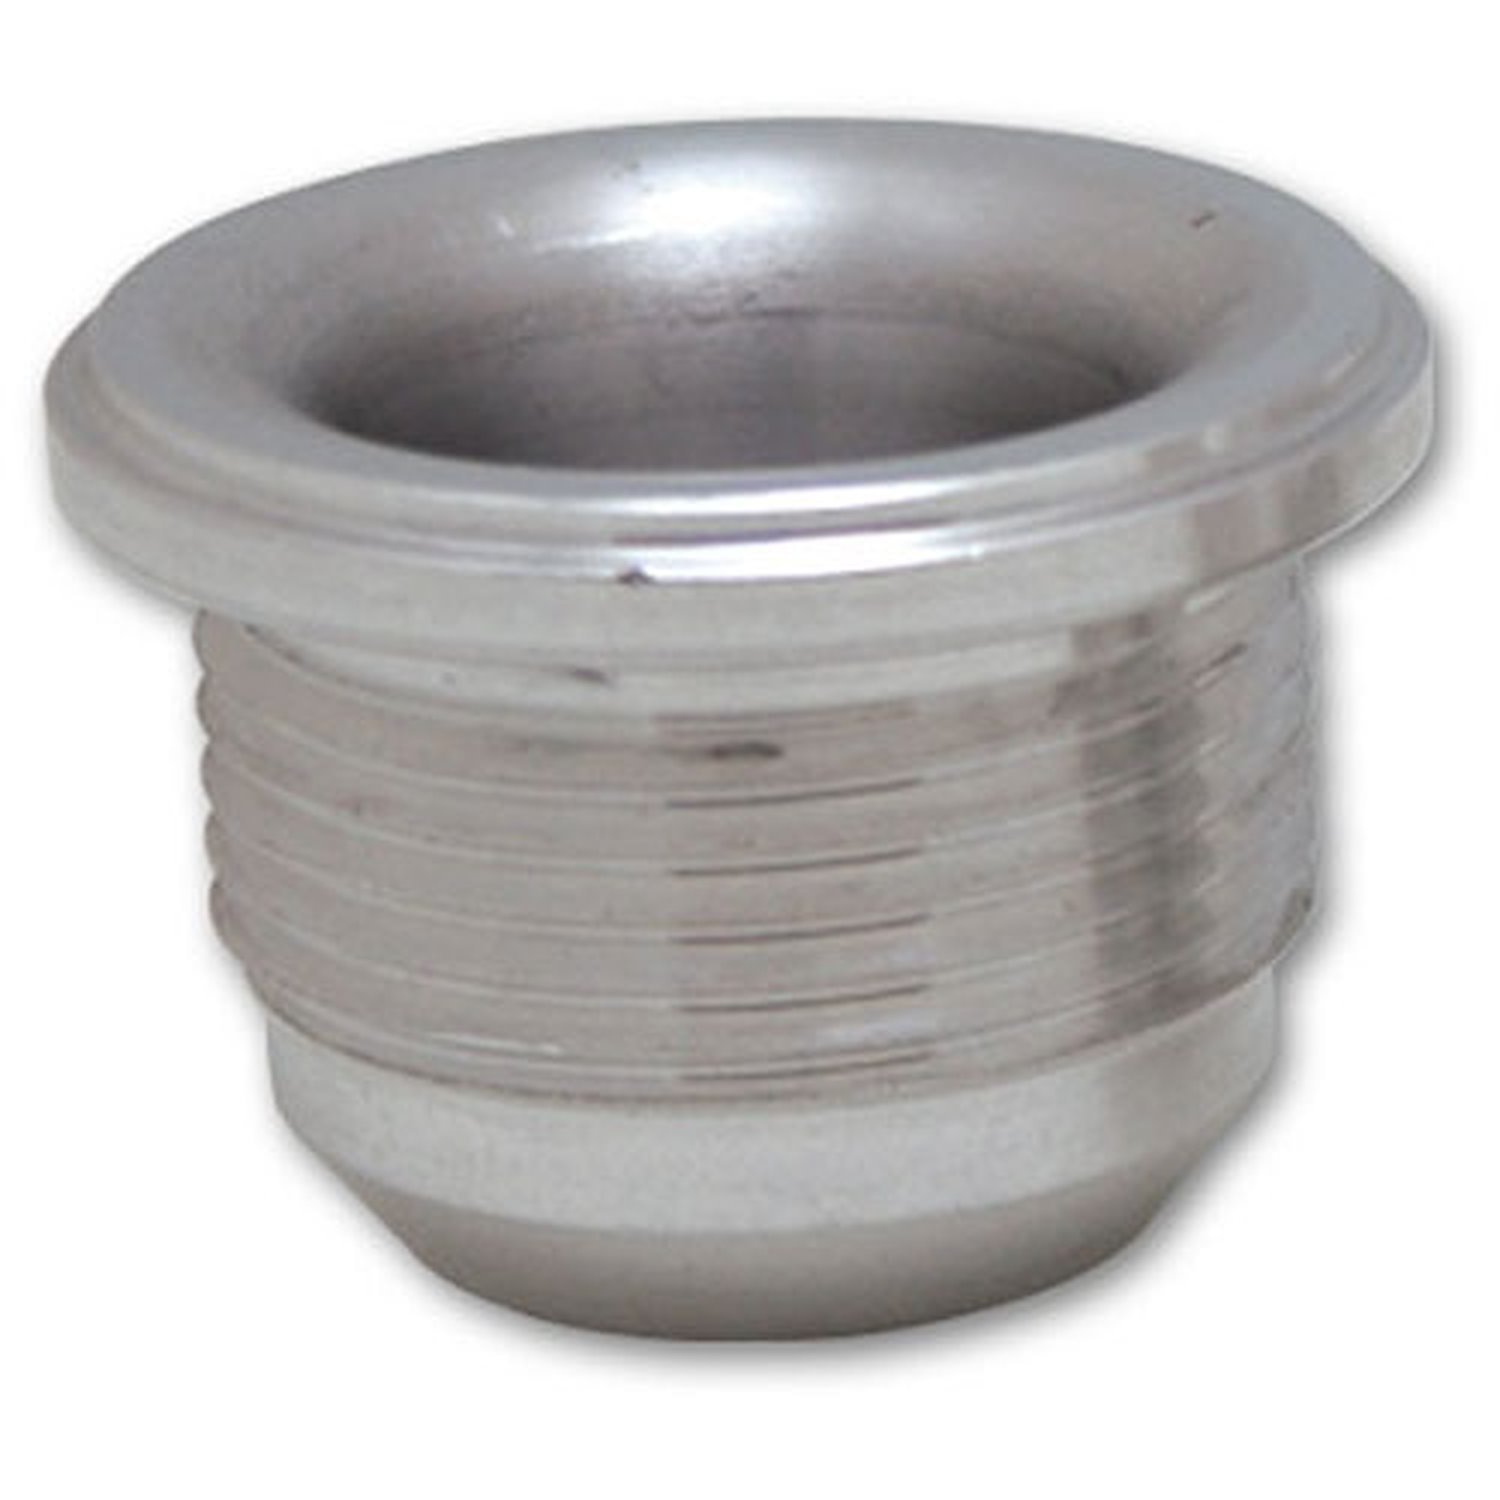 Male -6AN Aluminum Weld Bung 9/16" - 18 SAE Thread